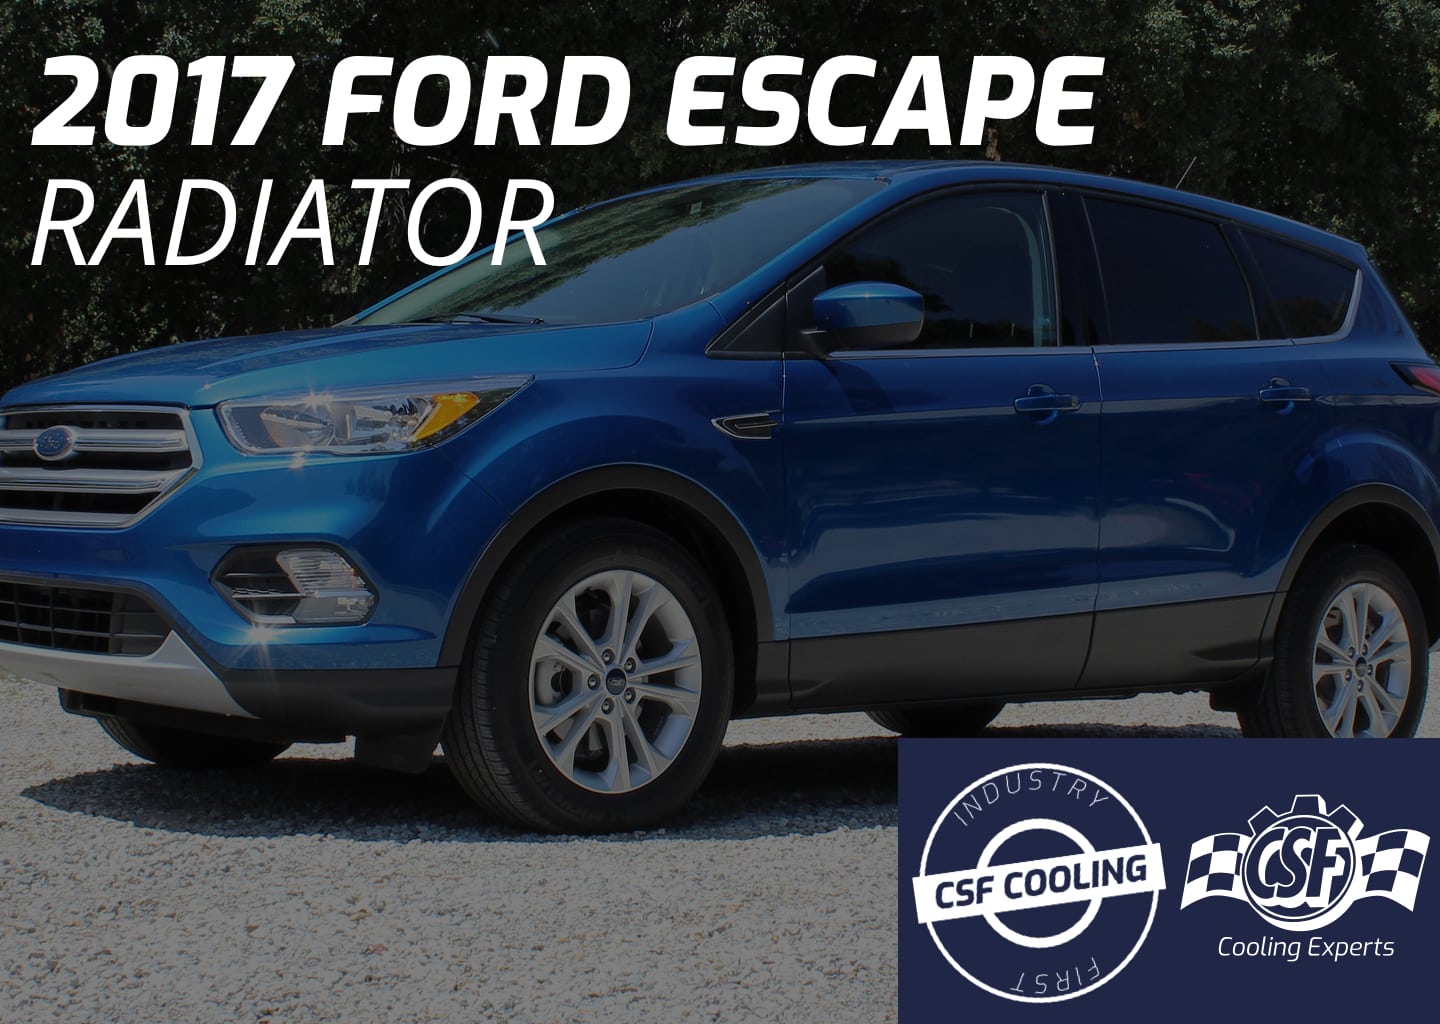 2017 Ford Escape Radiator